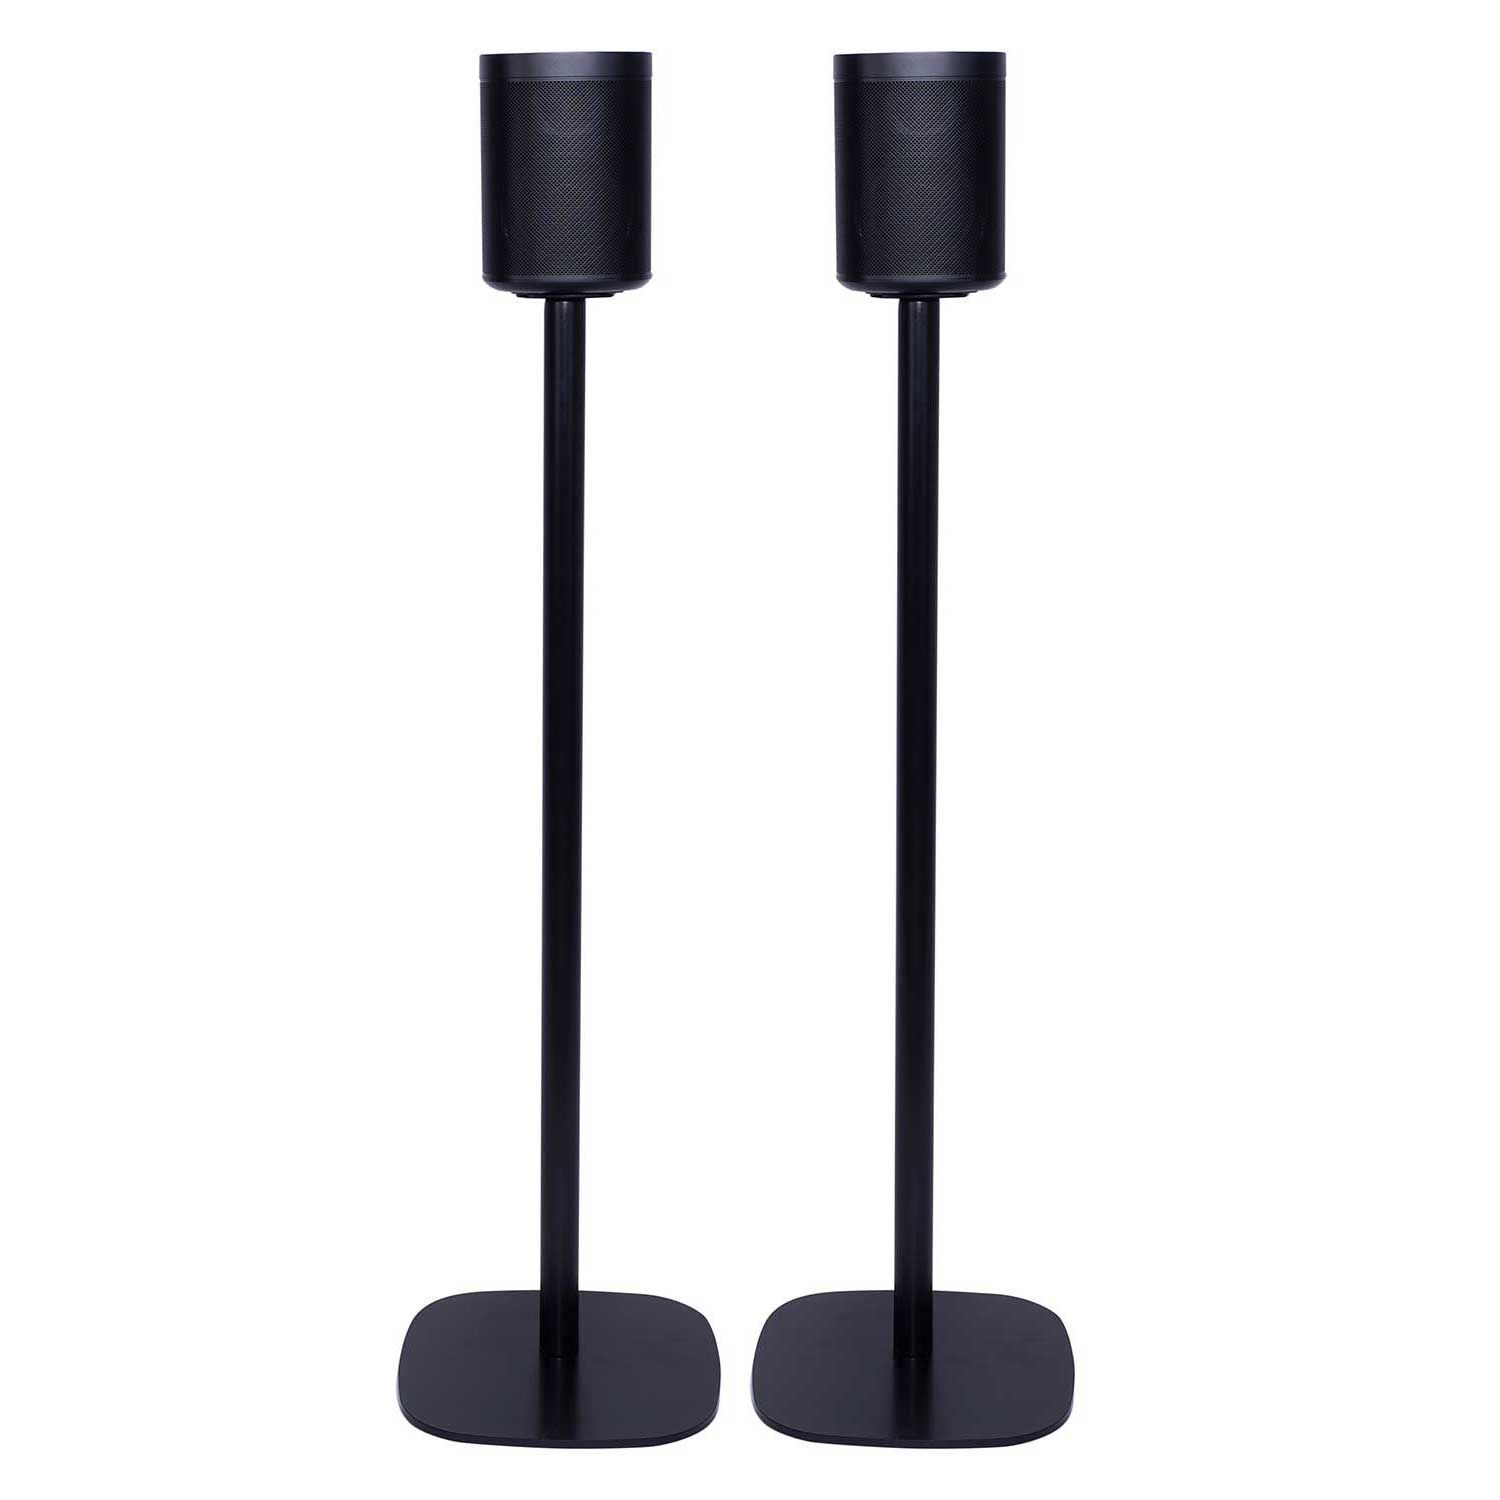 Skuffelse indlæg lokalisere Vebos floor stand Sonos One SL black set | The floor stand for Sonos One SL